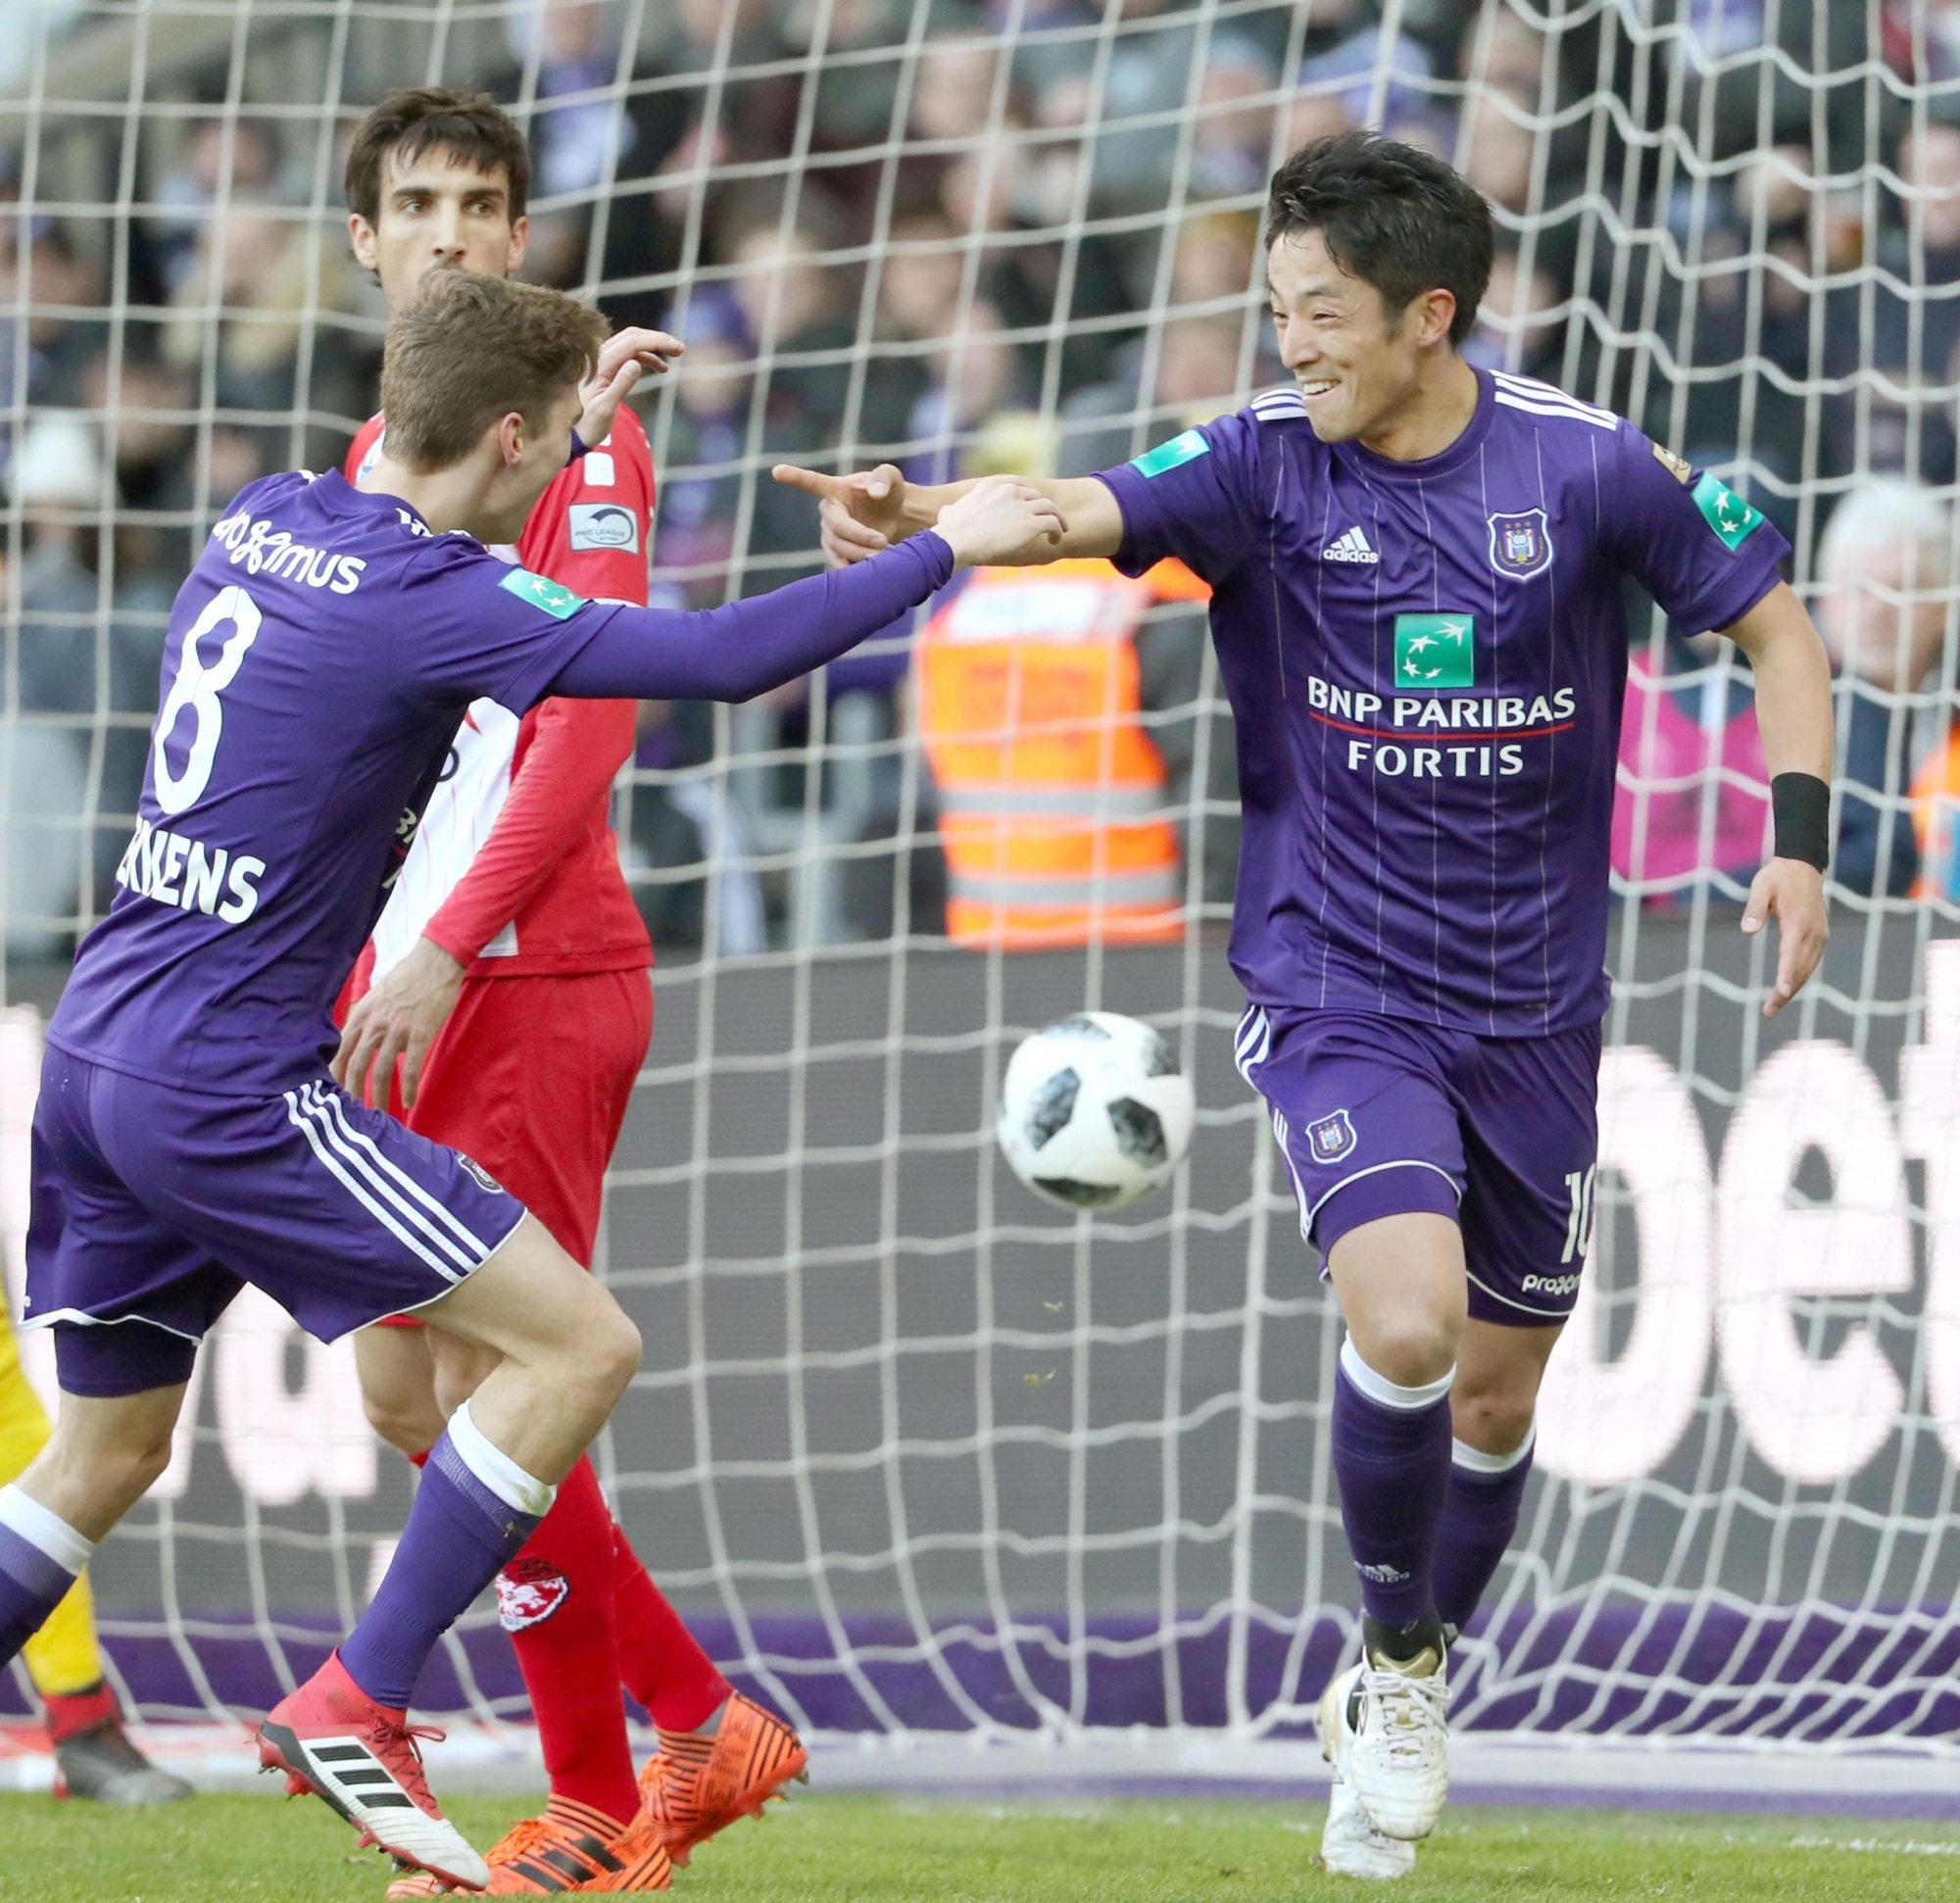 Anderlecht's Ryota Morioka celebrates after scoring the 2-0 goal